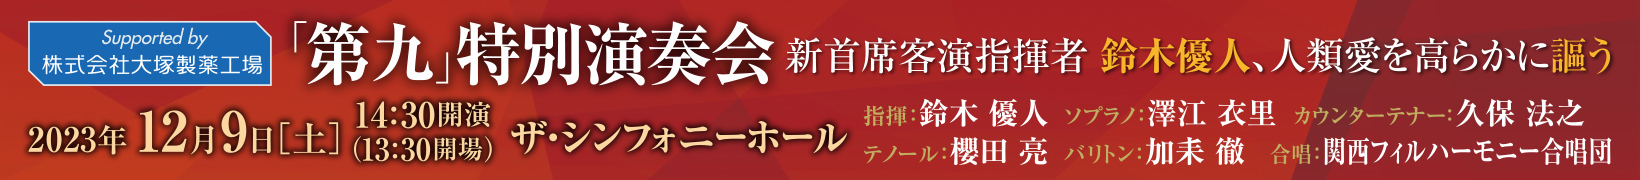 12月9日公演　新首席客演指揮者 鈴木優人、人類愛を高らかに謳う